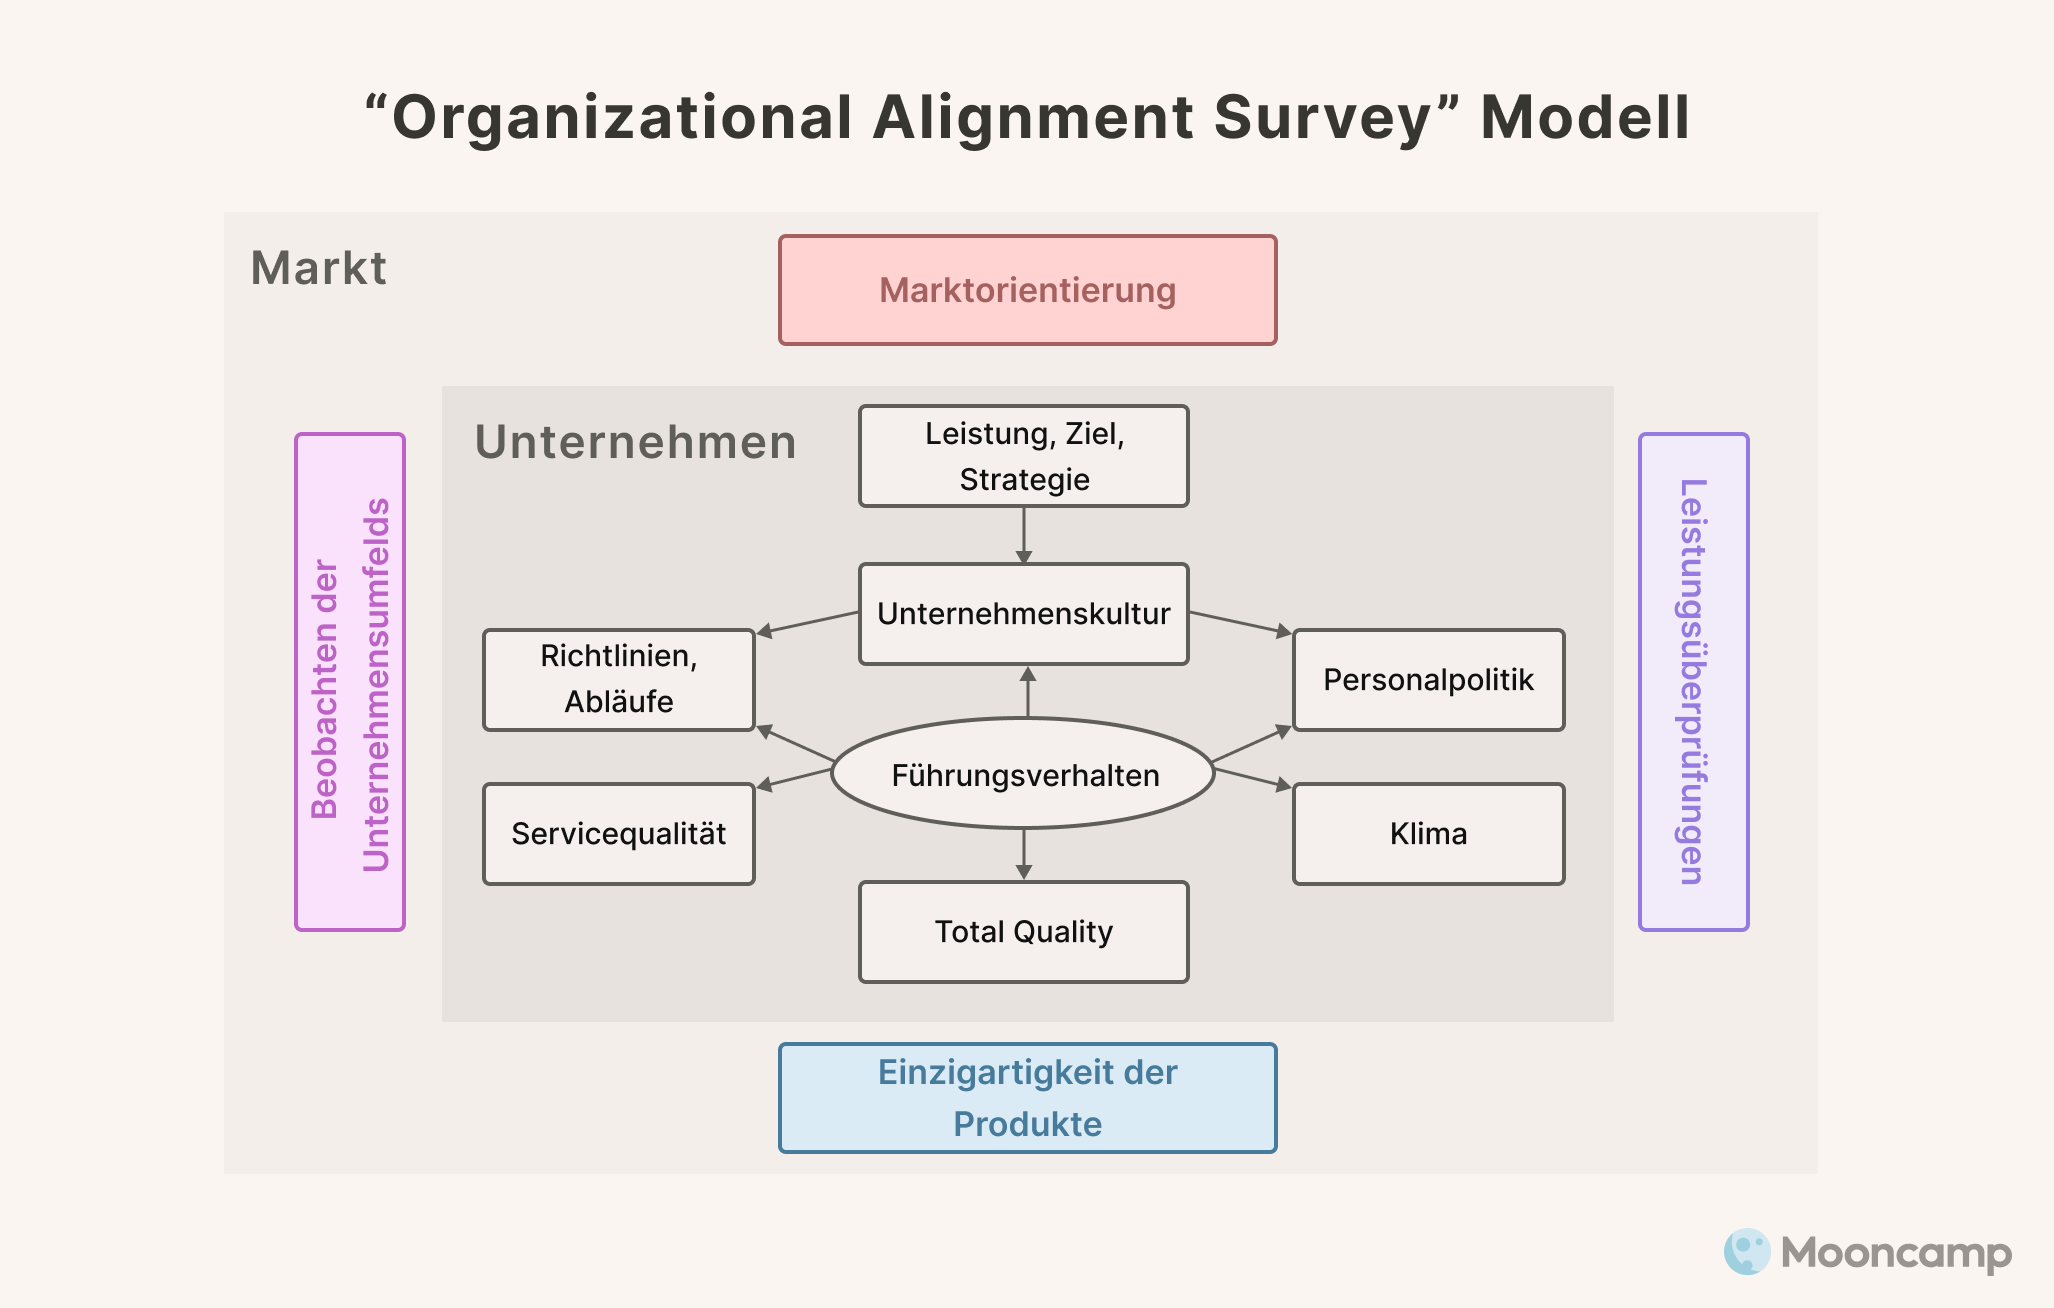 OA Survey Modell